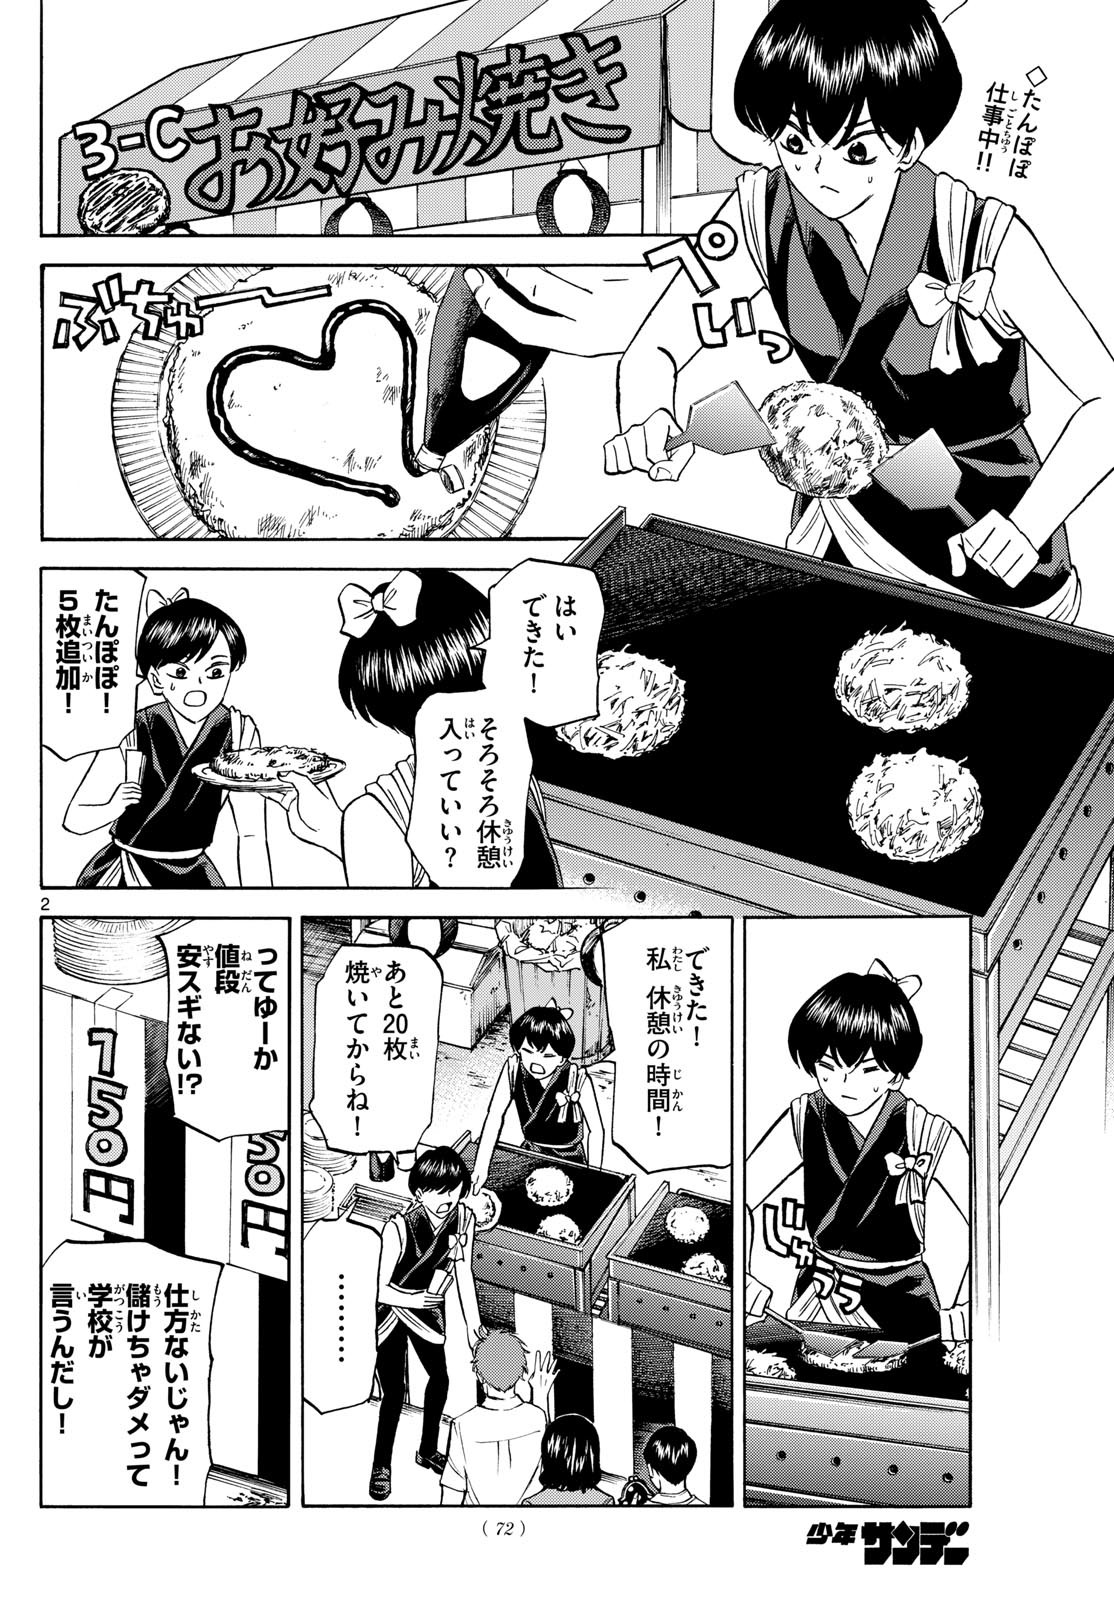 Ryu-to-Ichigo - Chapter 149 - Page 2